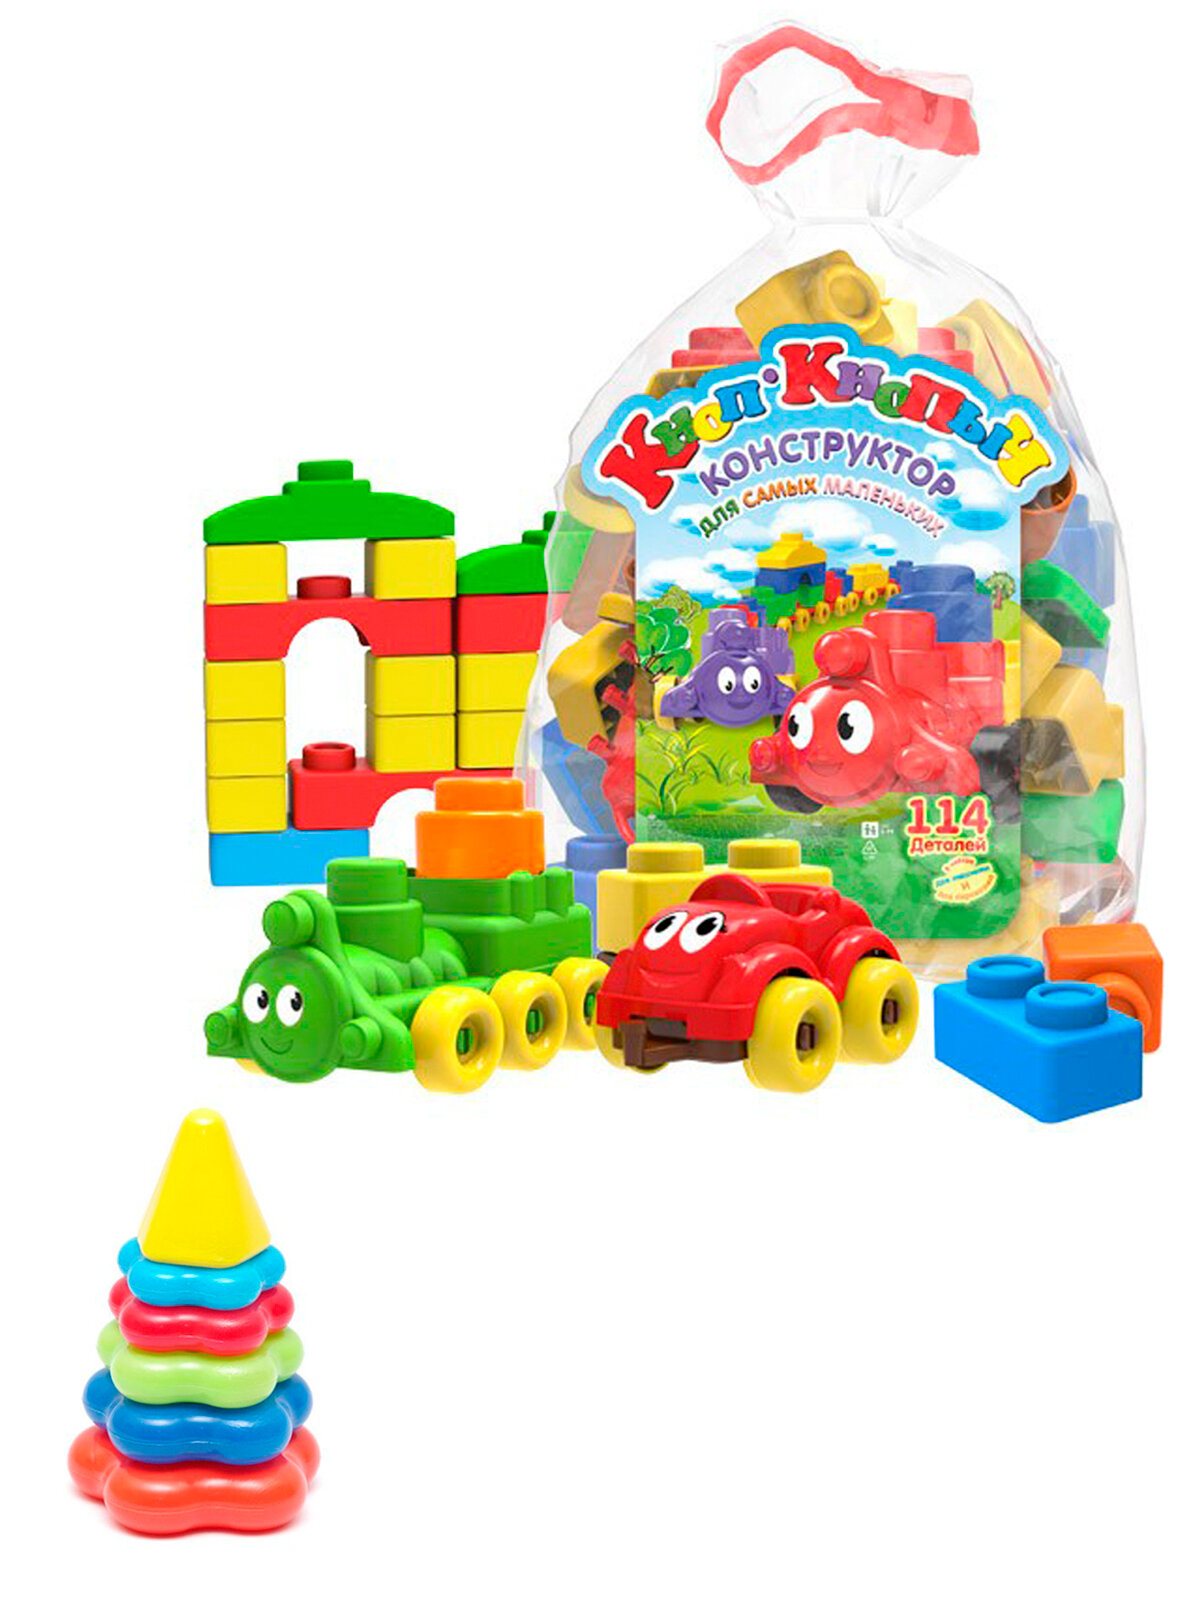 Развивающие игрушки для малышей набор Конструктор "Кноп-Кнопыч" 114 дет. + Пирамидка детская малая, Биплант